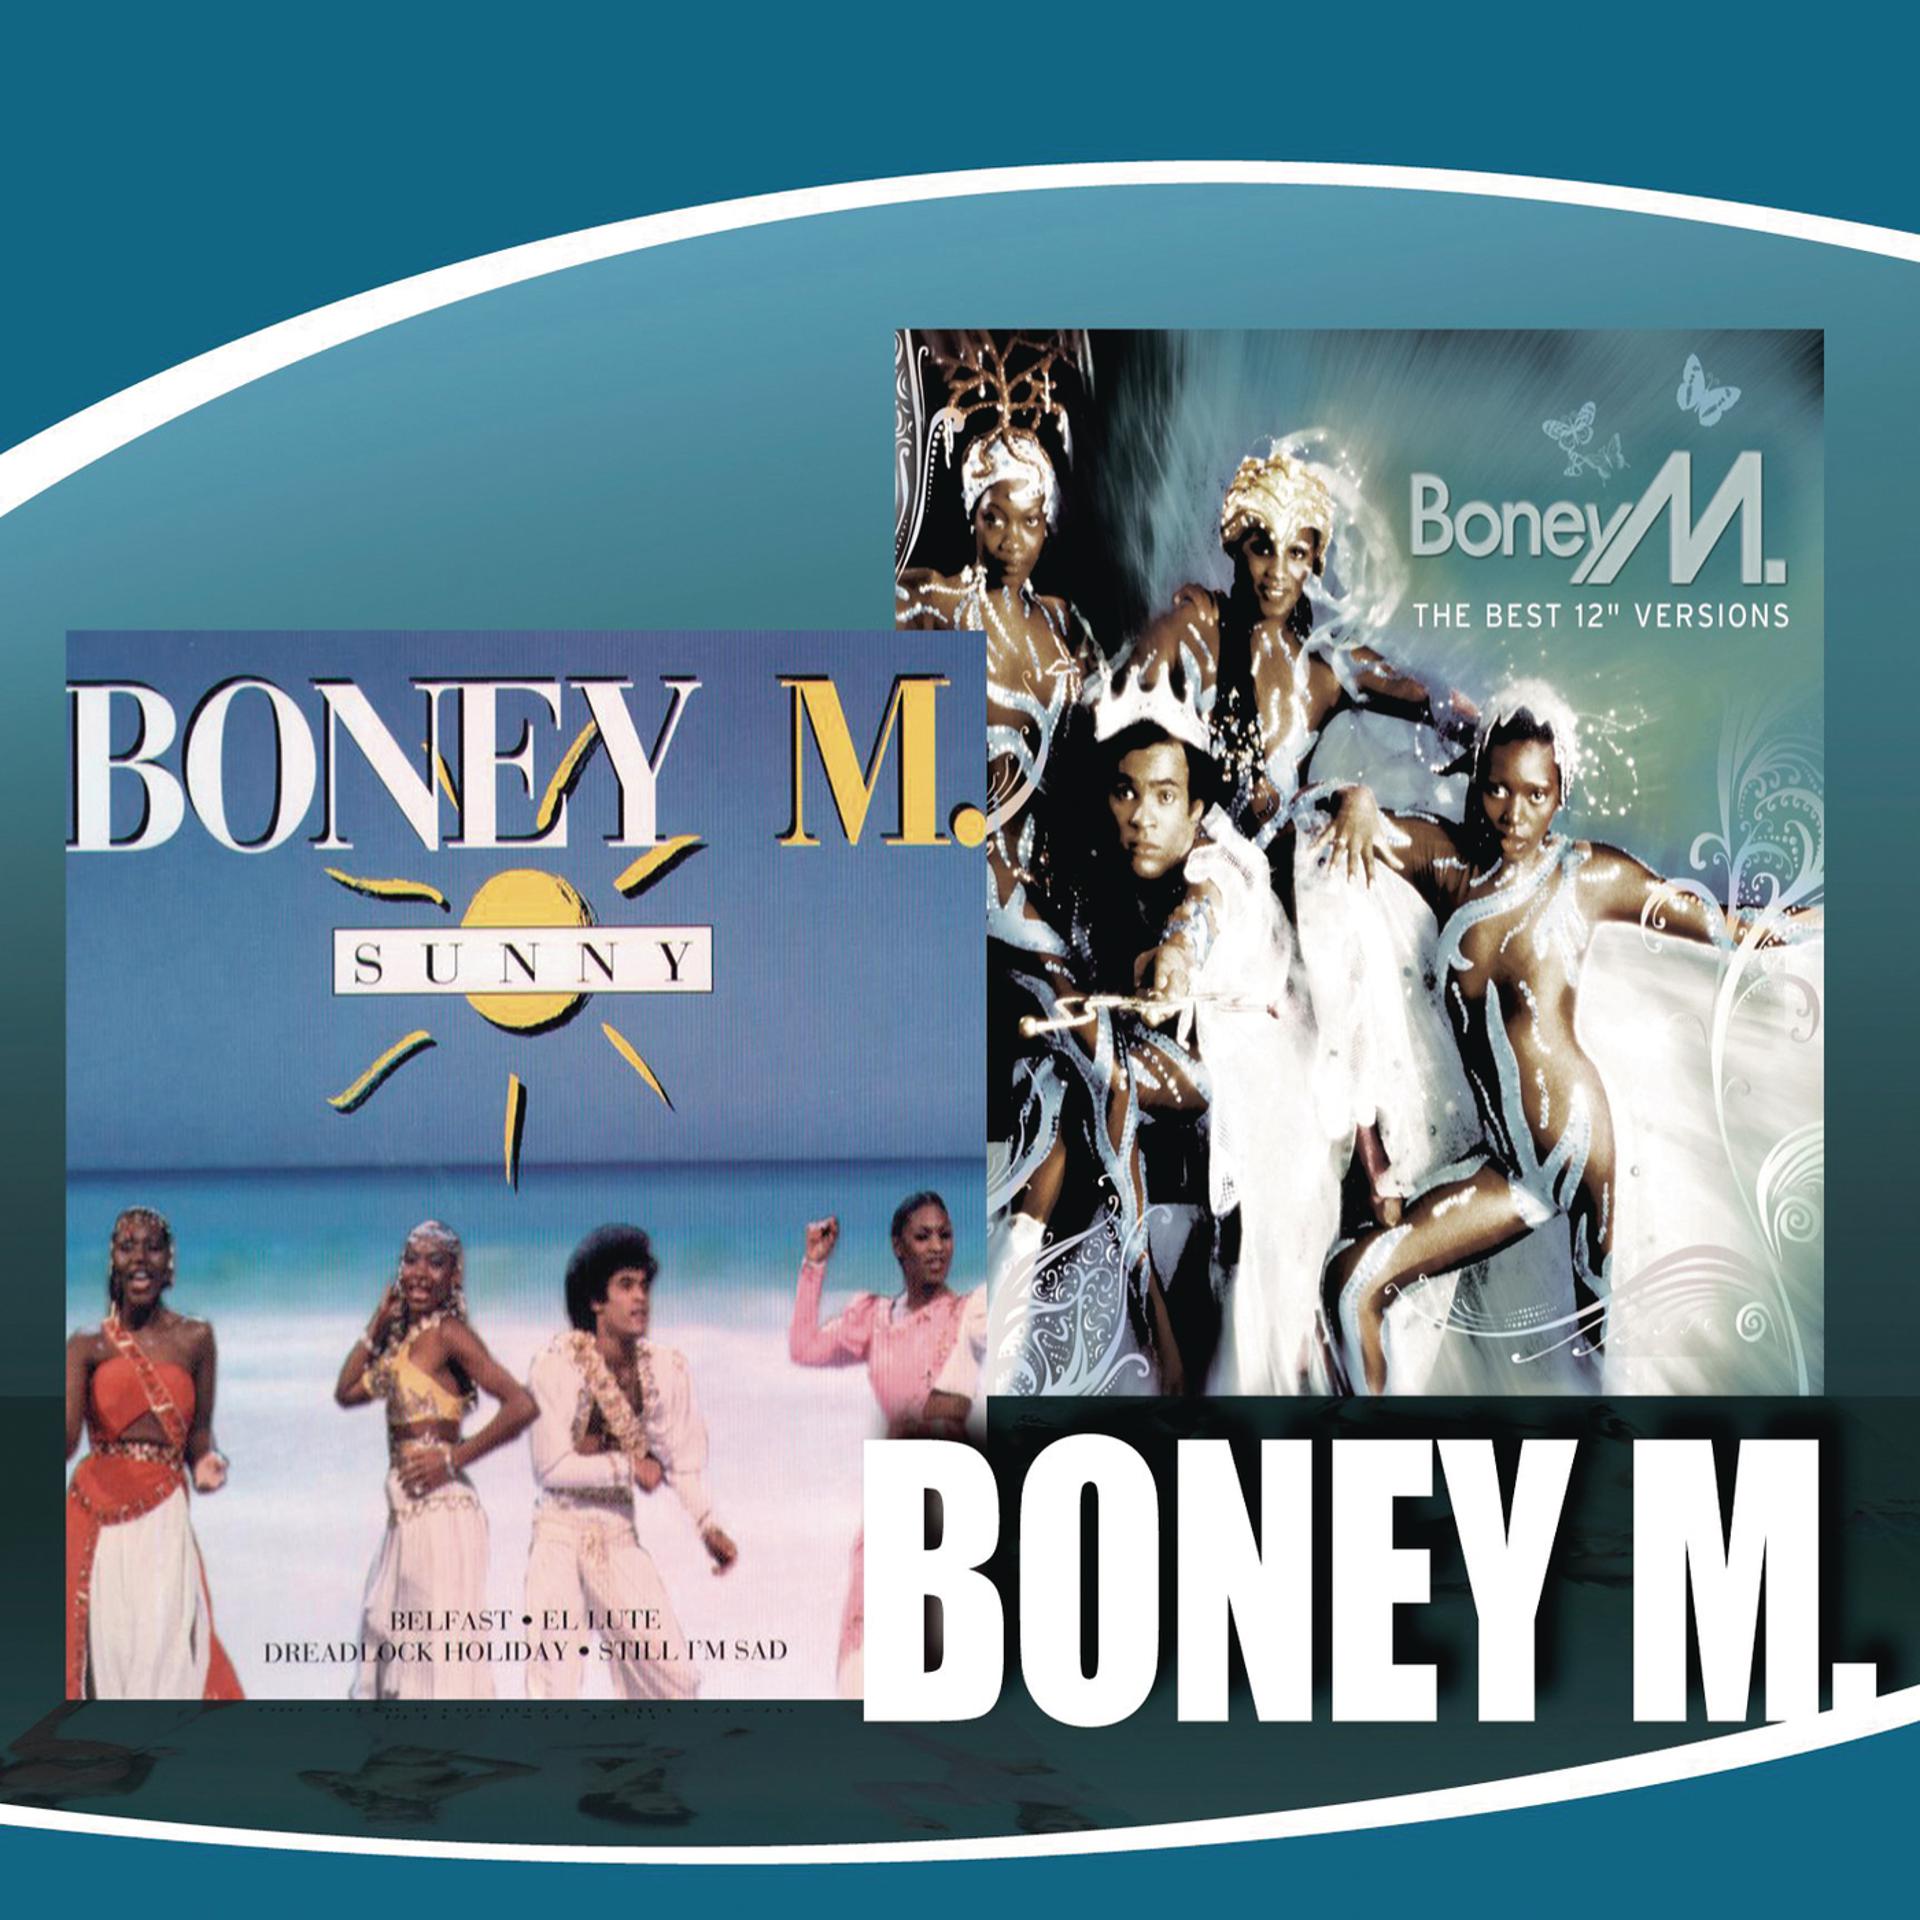 Boney m home. Boney m Sunny обложка. Boney m обложки альбомов. Boney m 2014. Первый состав Boney m.